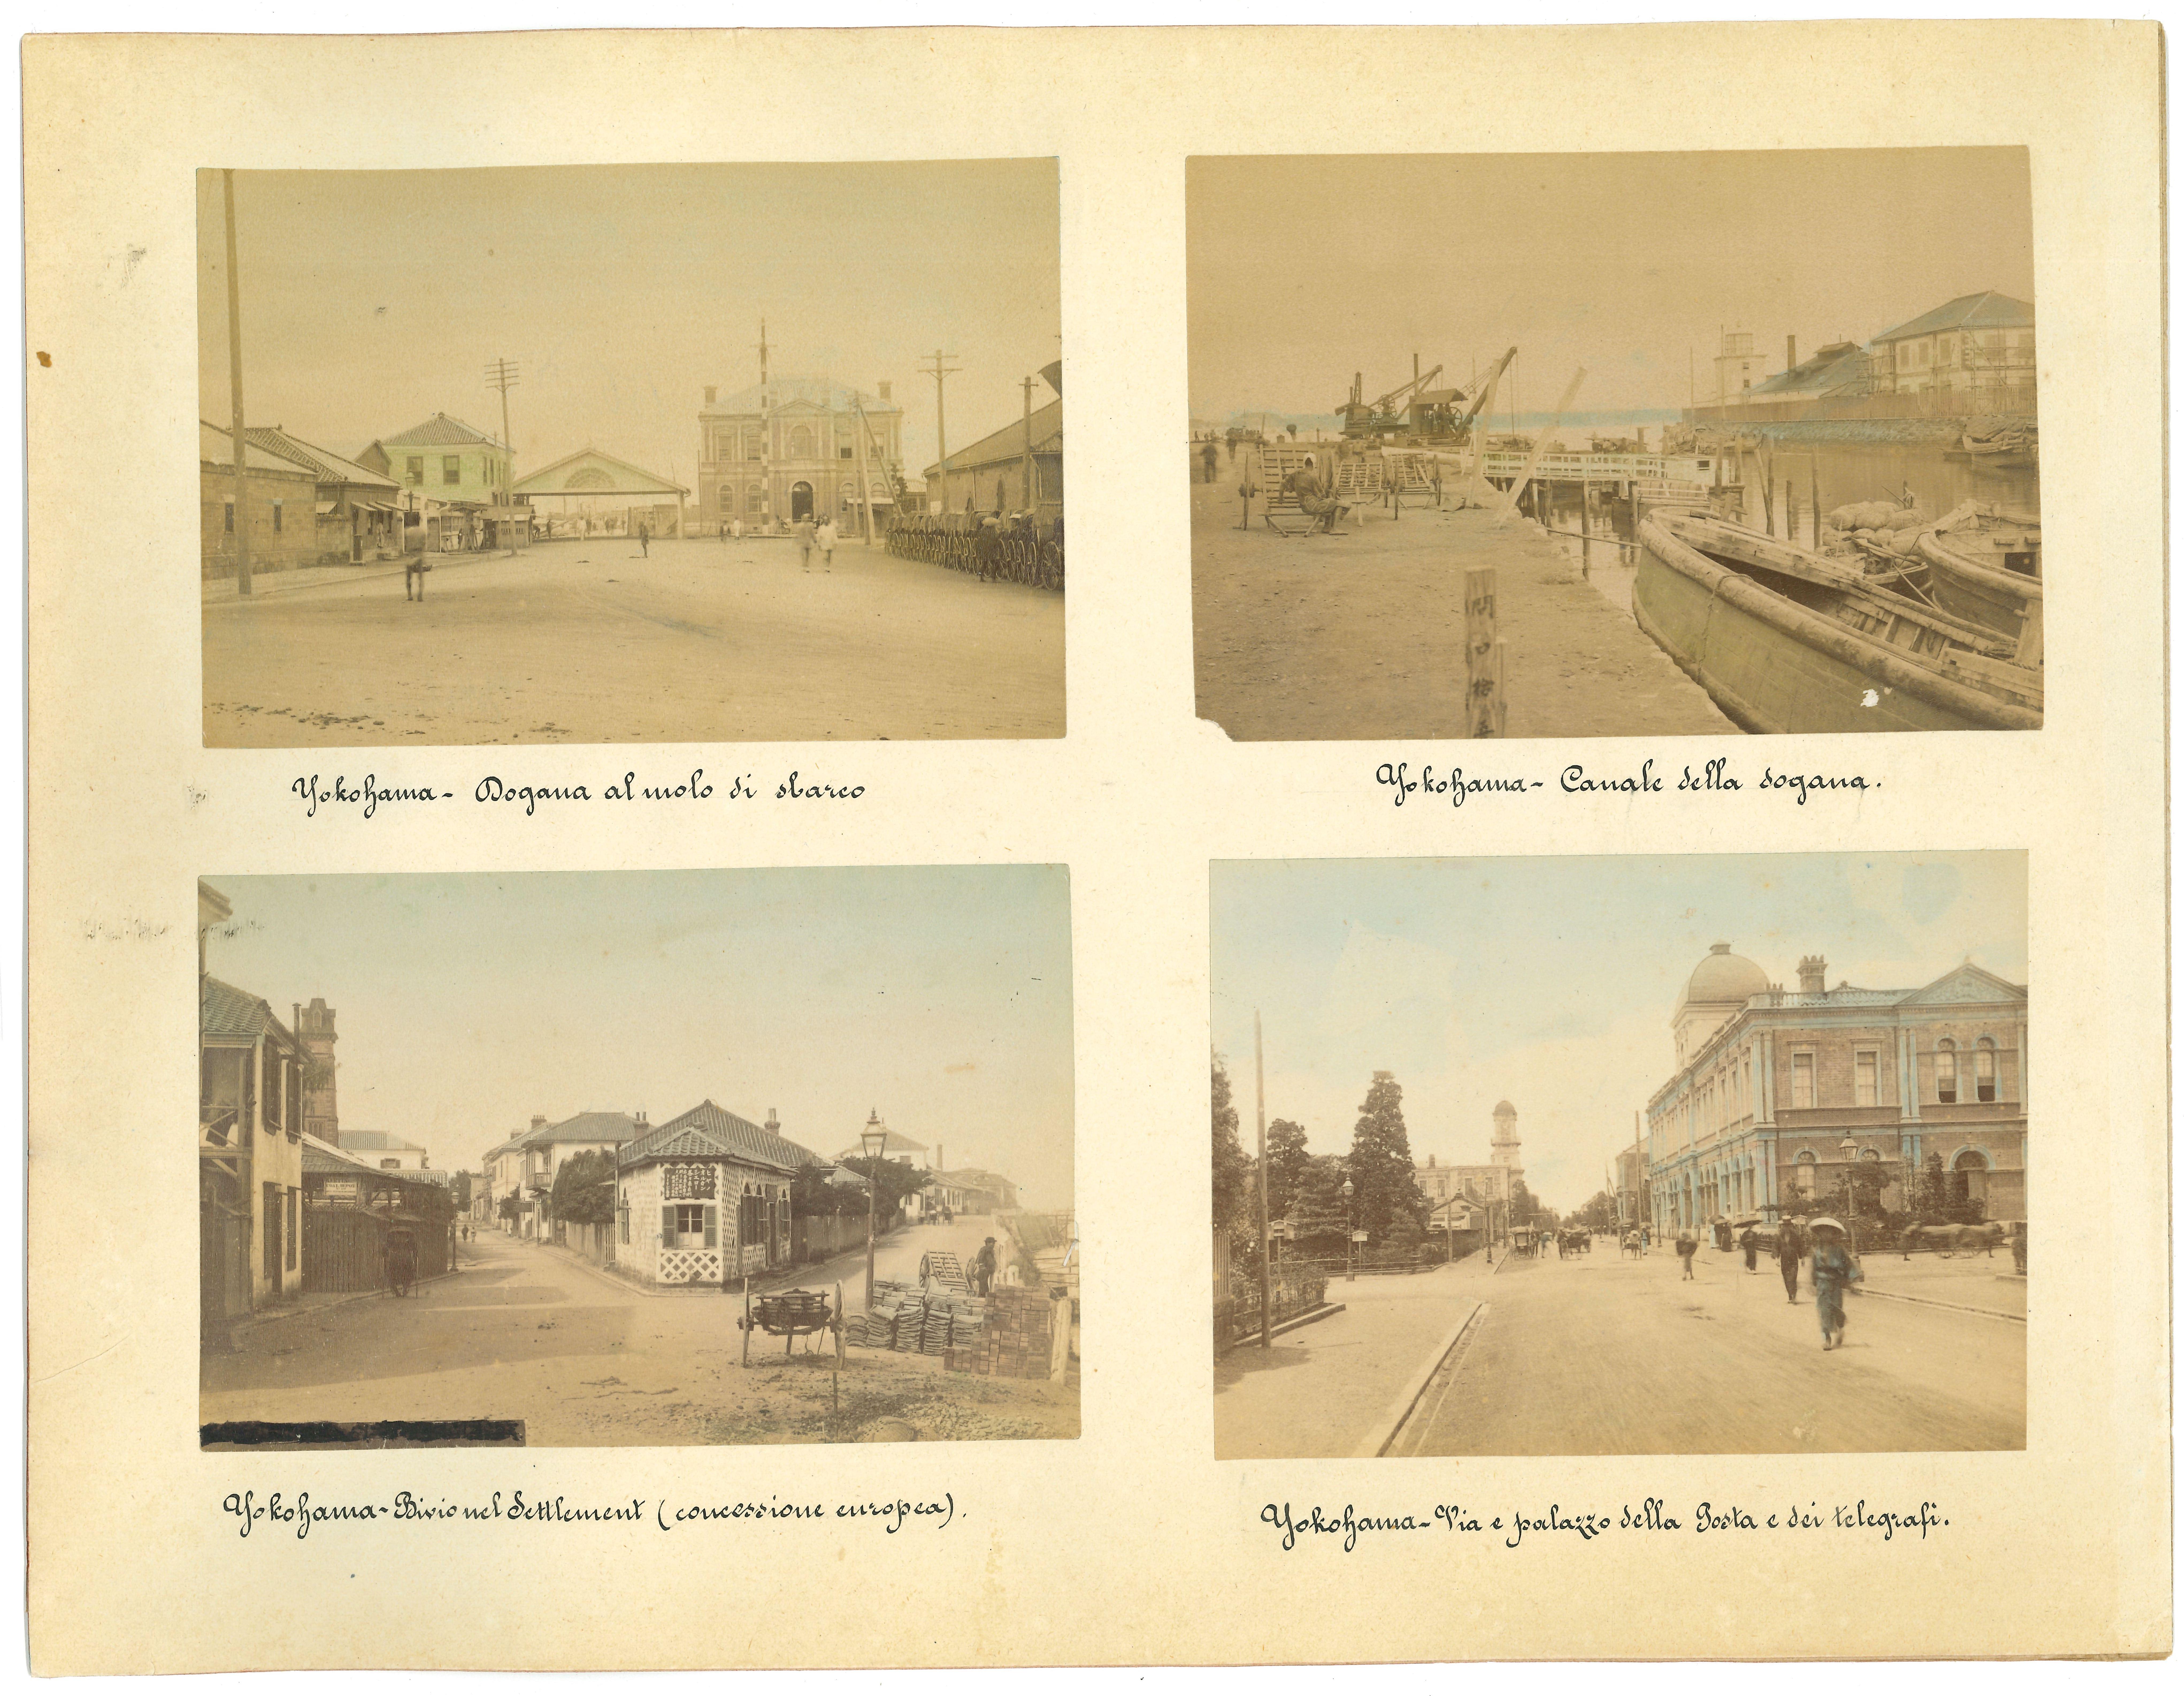 Antike Ansichten von Yokohama - Vintage Albumendrucke - 1890er Jahre